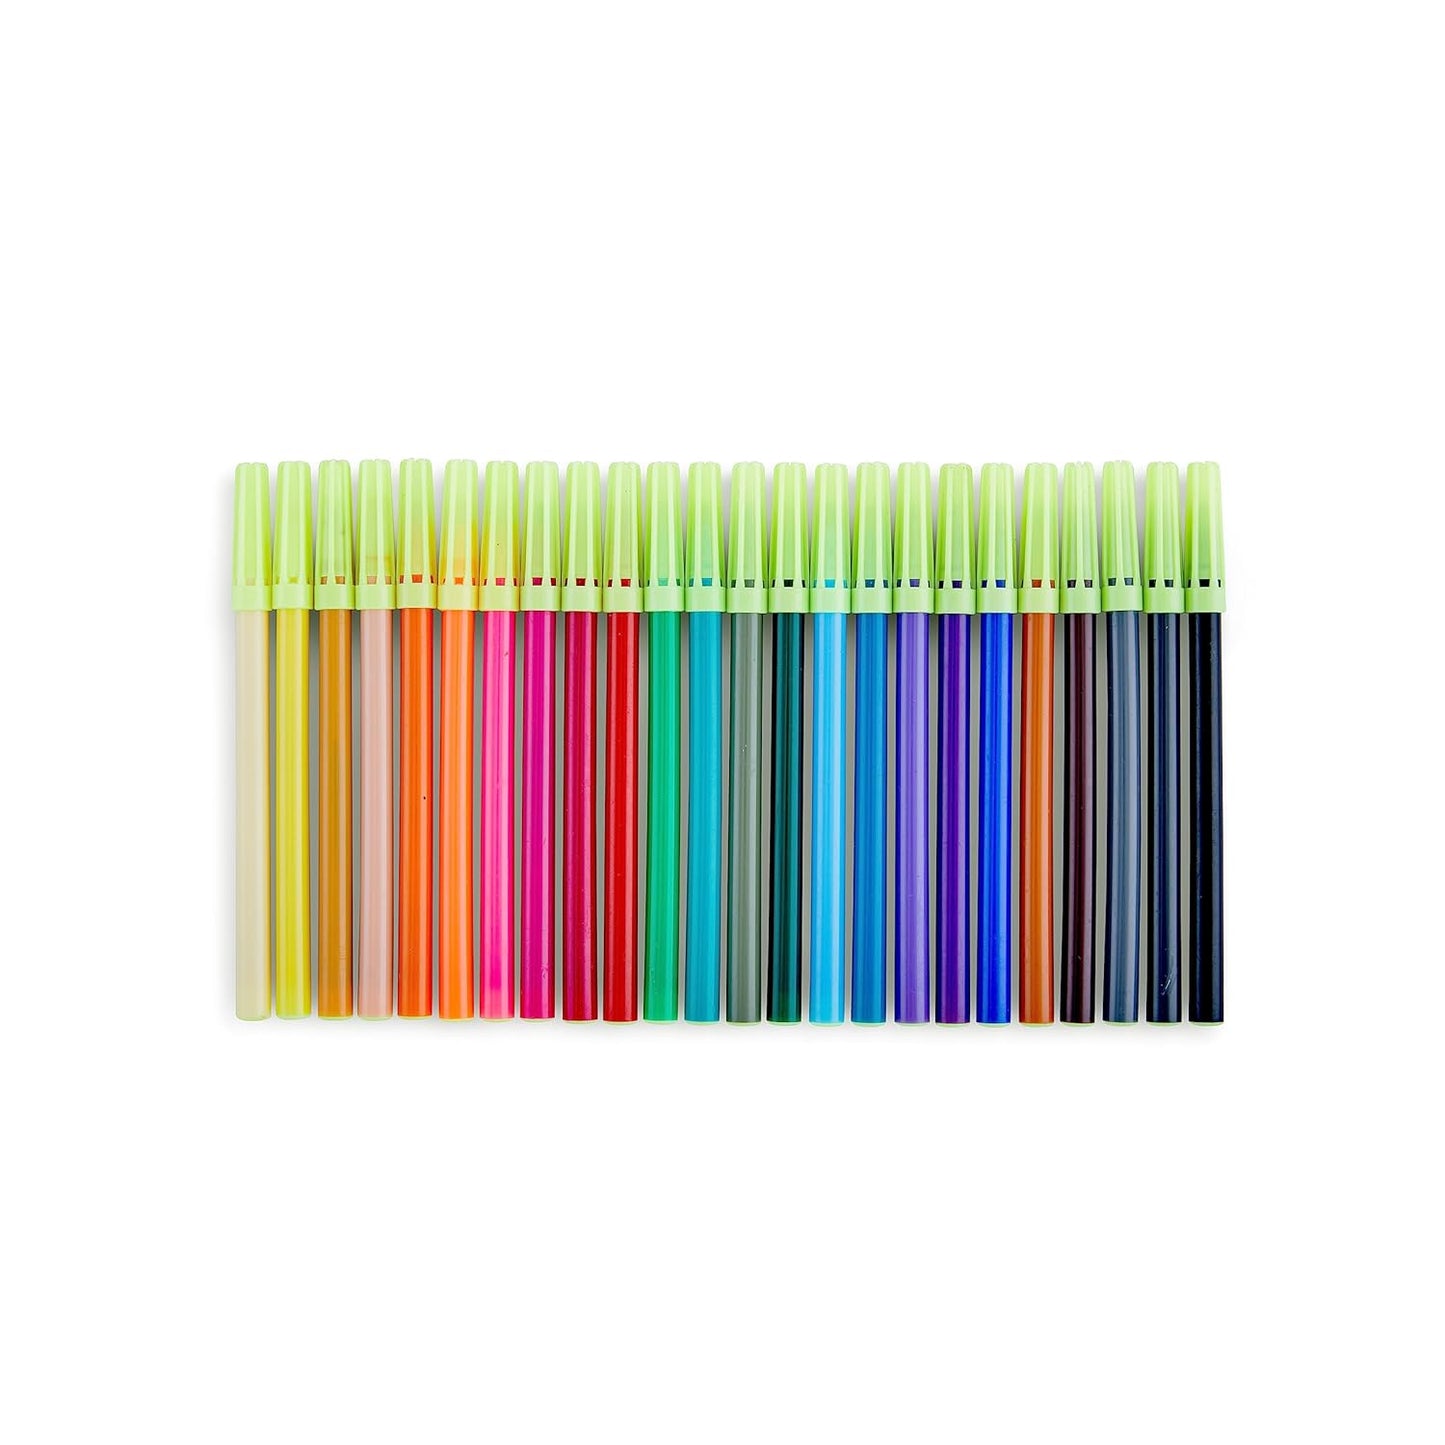 Camlin Sketch Pens with Free Stencil - 24 Shades (Multicolor)